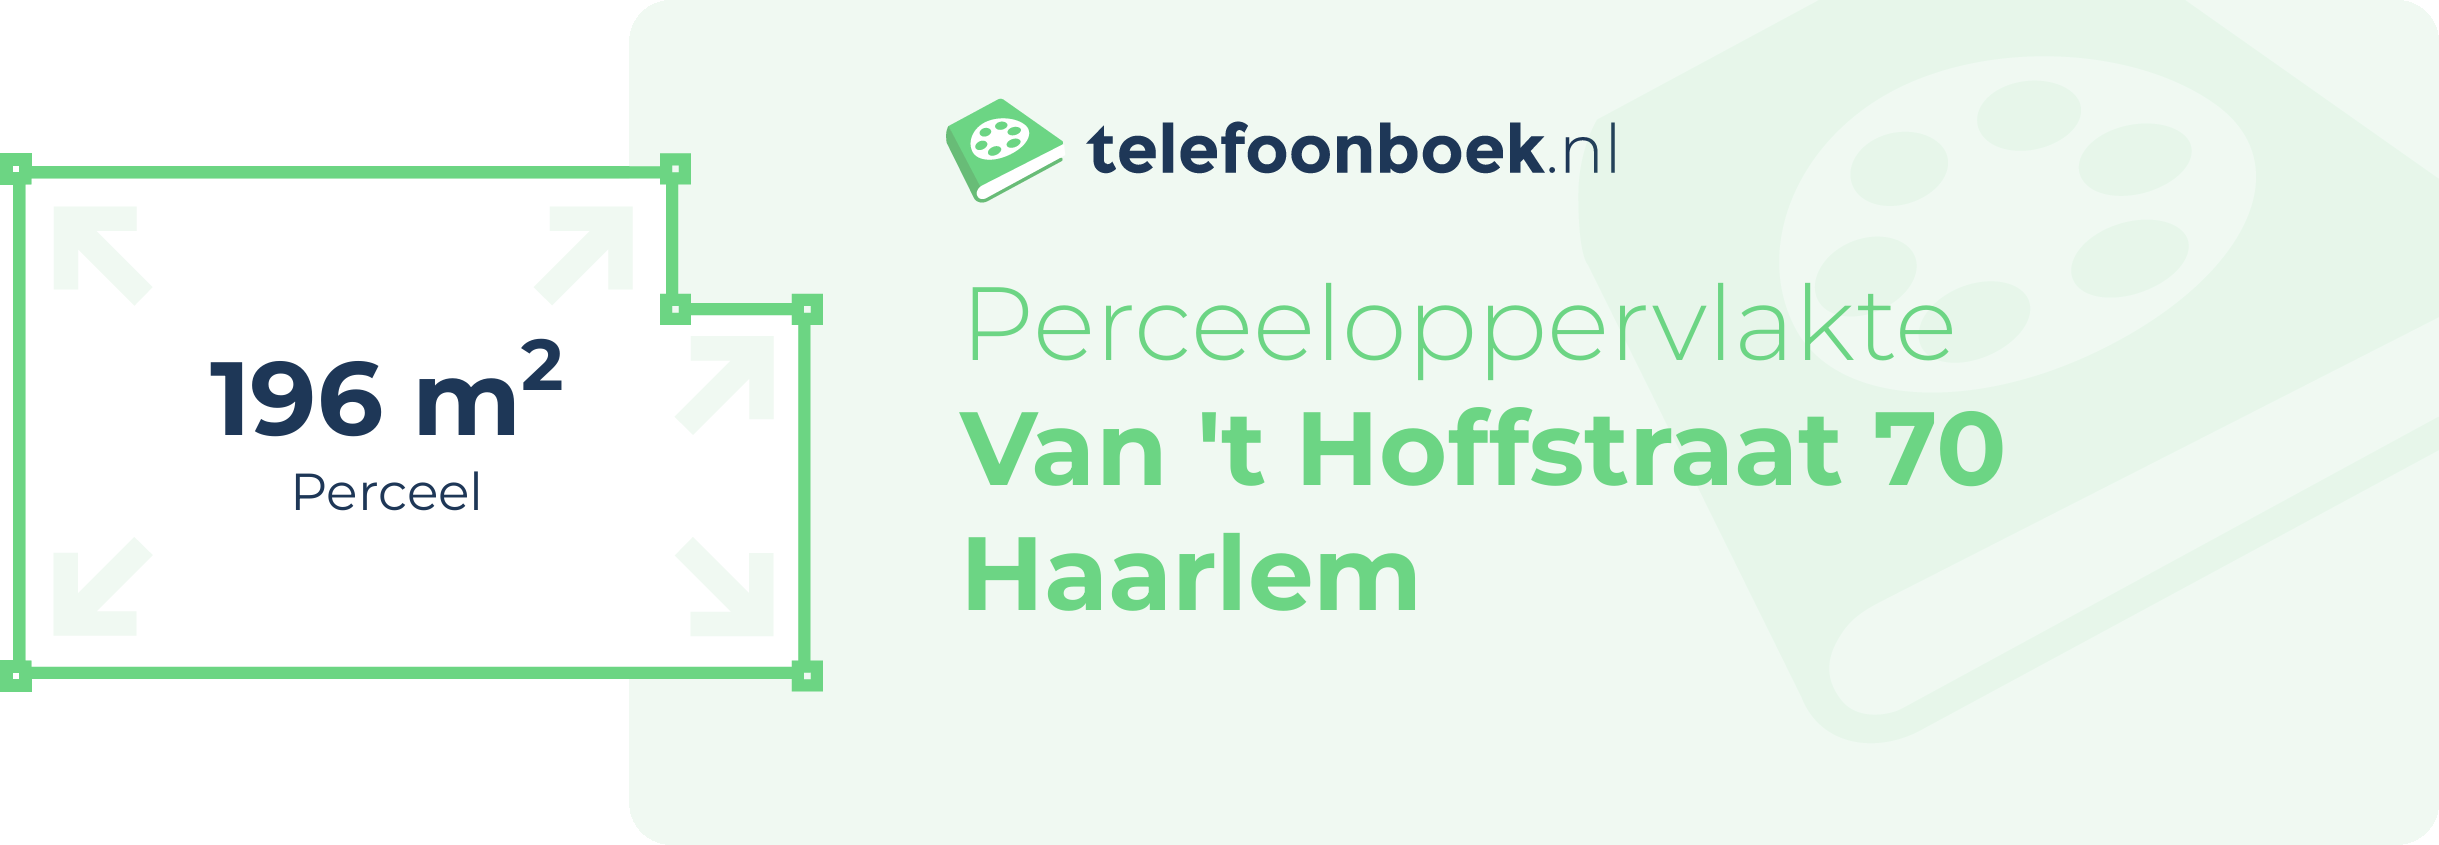 Perceeloppervlakte Van 't Hoffstraat 70 Haarlem